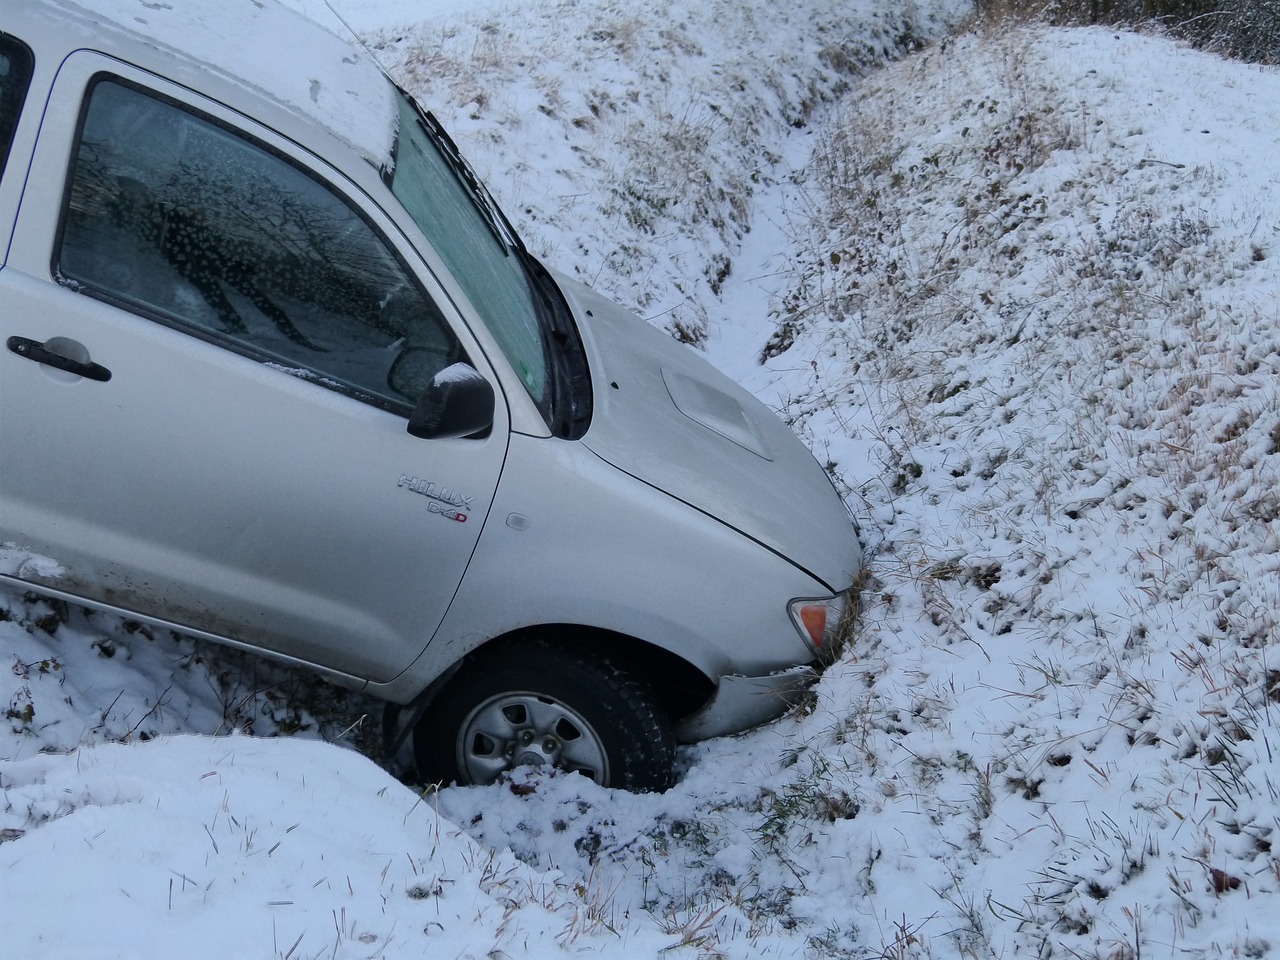 Witterungsverhältnisse wie Schnee, Starkregen oder Glatteis gehören auch in den Unfallbericht